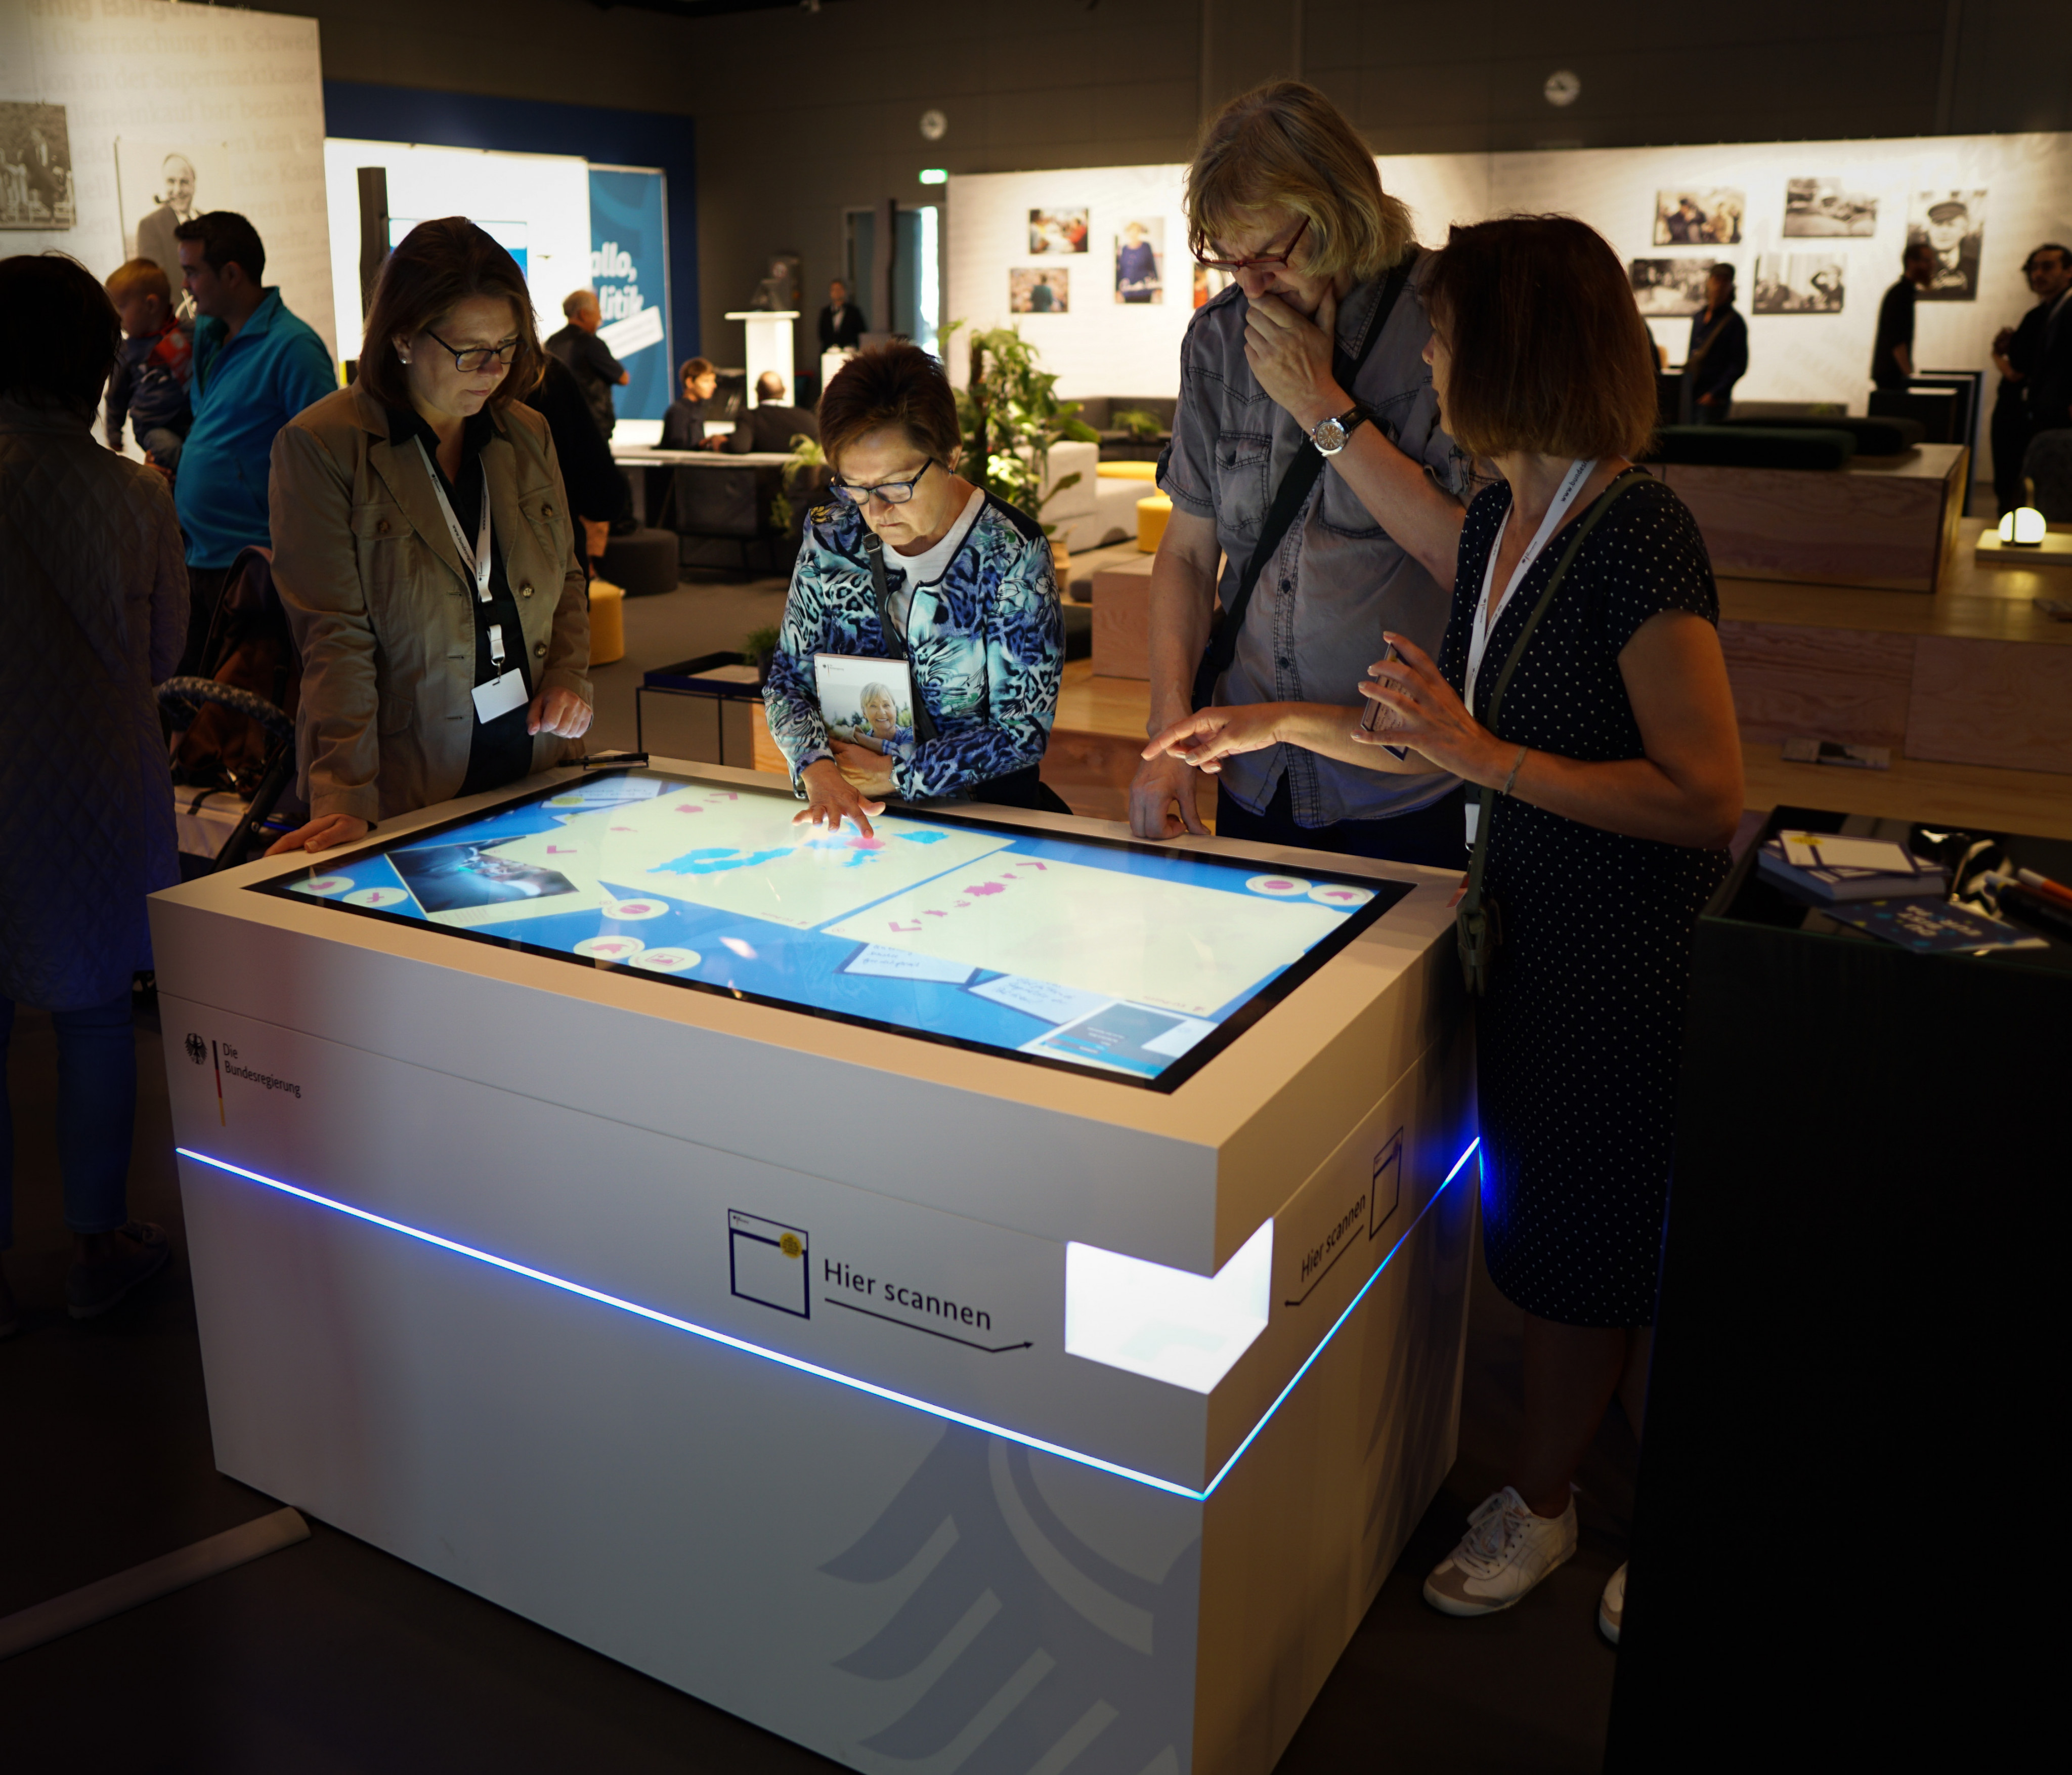 Eine Gruppe von vier Personen steht um einen Kubusförmigen Tisch, dessen Oberfläche ein Touchscreen ist. Auf dem Screen sind Informationen und Bilder zu sehen, welche sich die Gruppe ansieht.